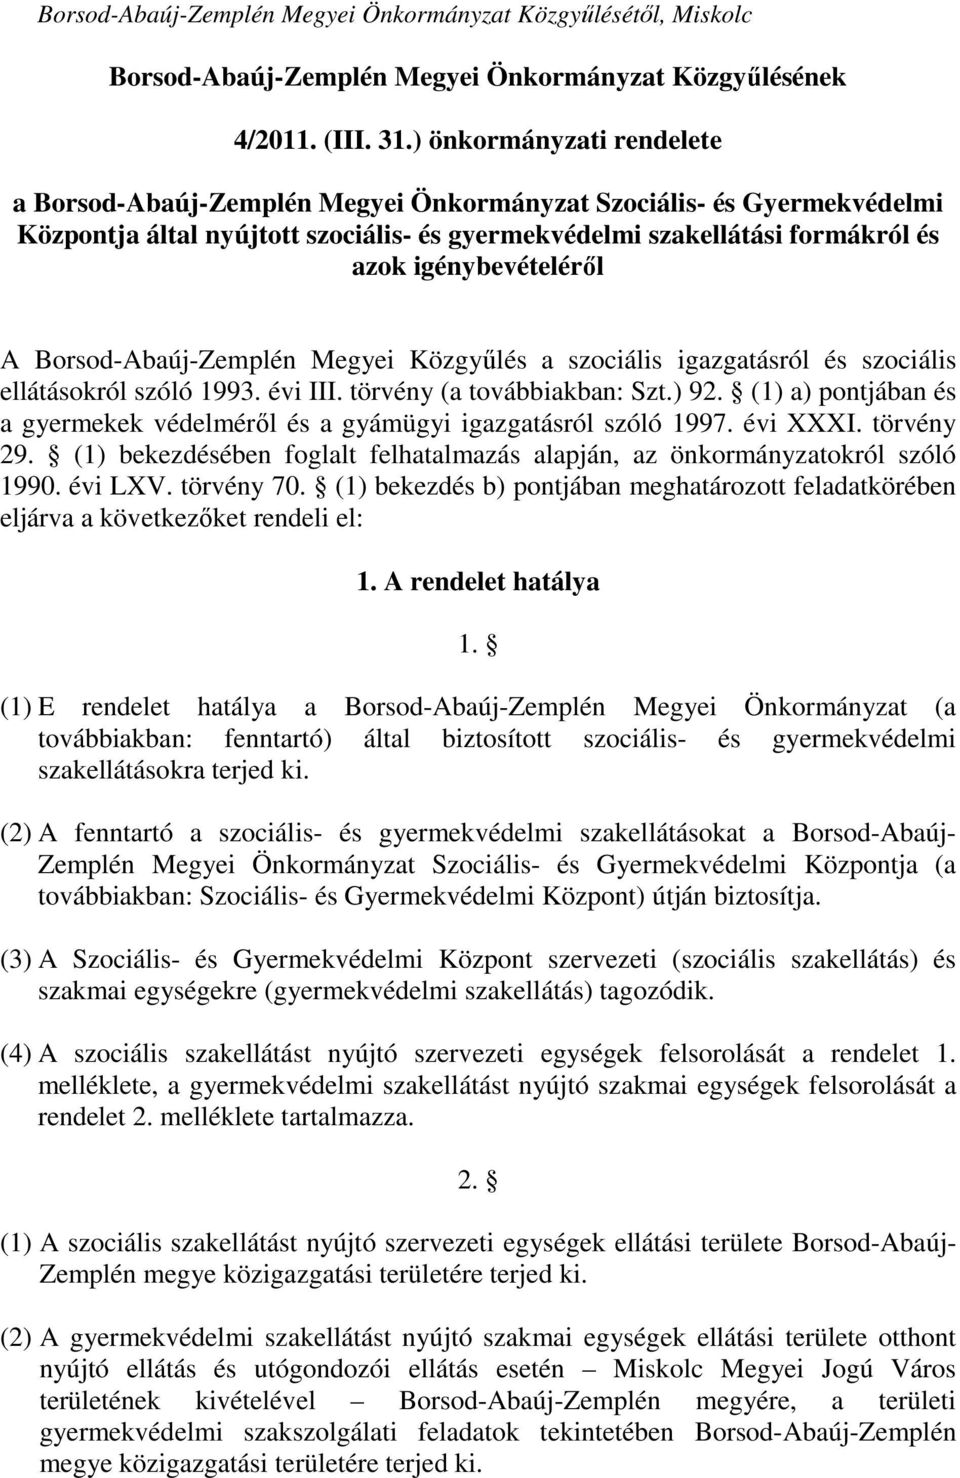 A Borsod-Abaúj-Zemplén Megyei Közgyűlés a szociális igazgatásról és szociális ellátásokról szóló 1993. évi III. törvény (a továbbiakban: Szt.) 92.